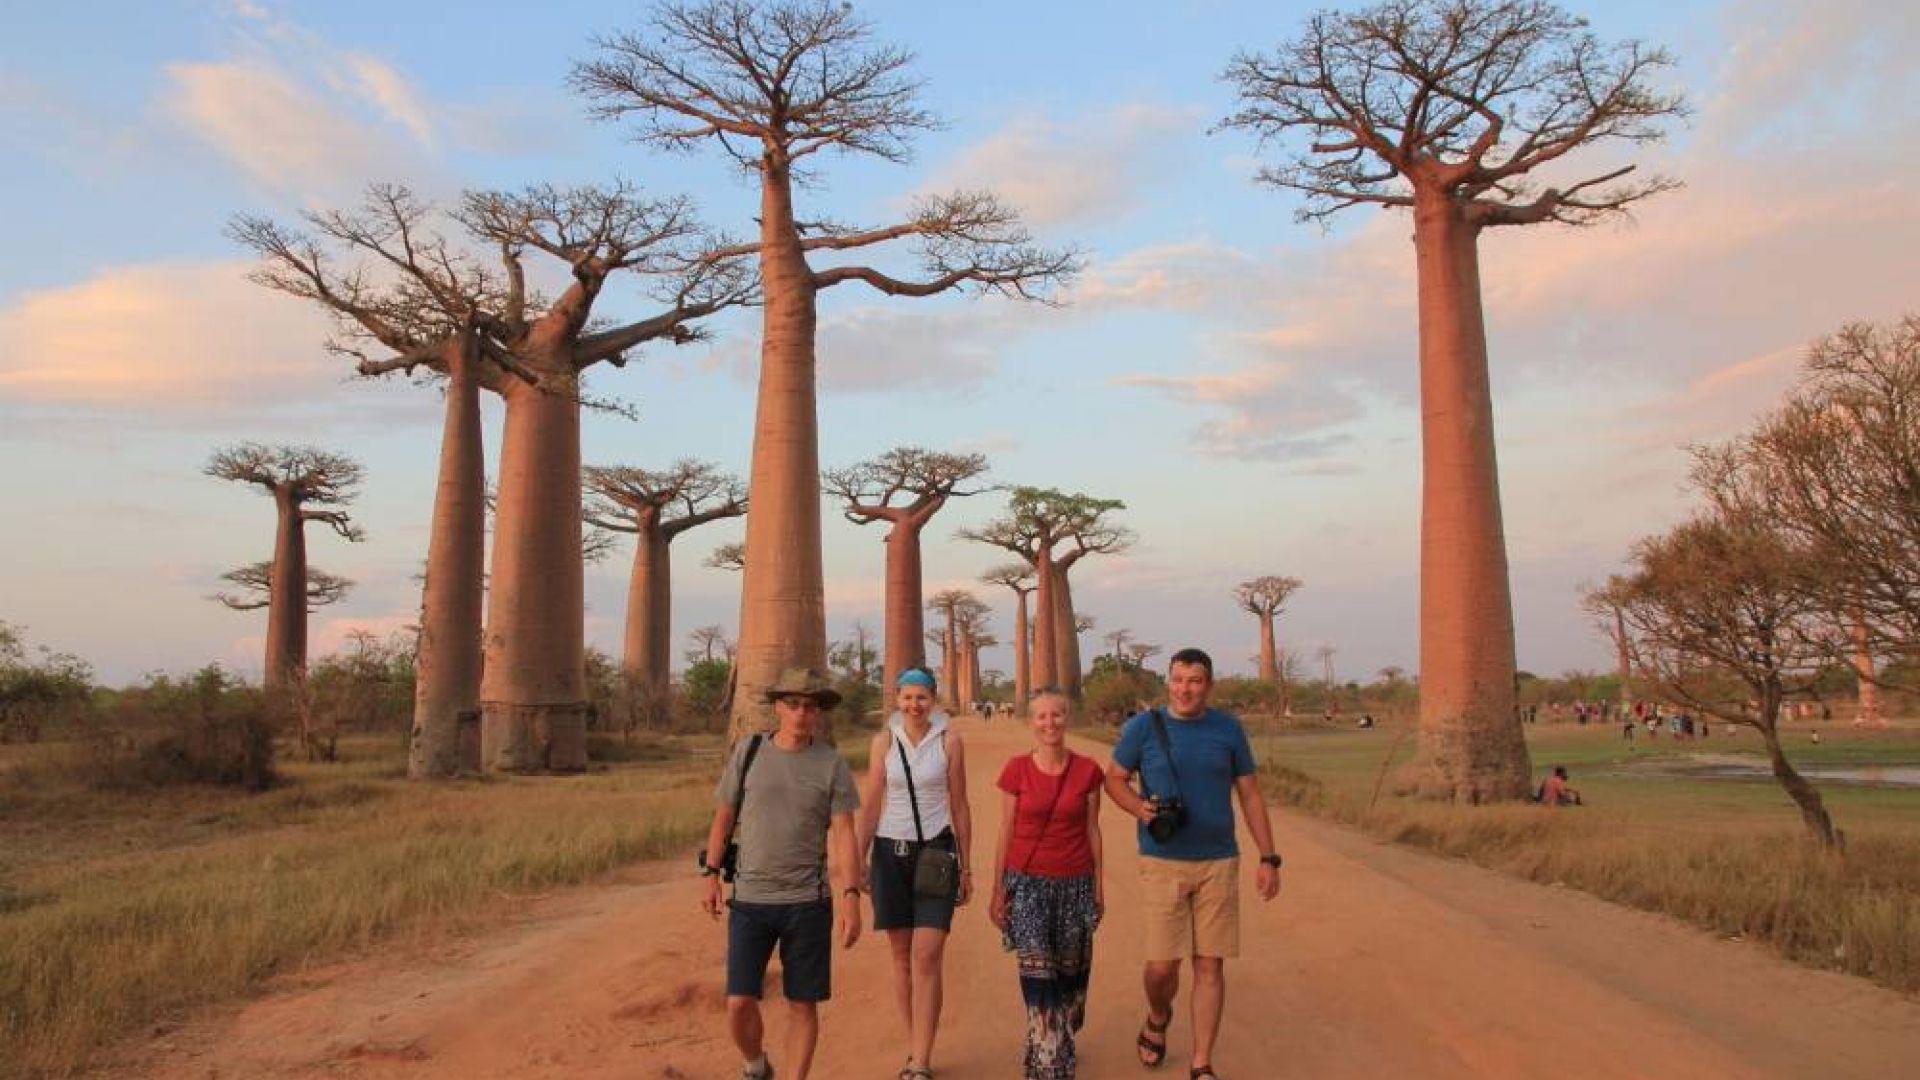 Gyvenimo kelionė į Afriką. Baobabų alėja ir akistata su kalnų gorilomis (III dalis)